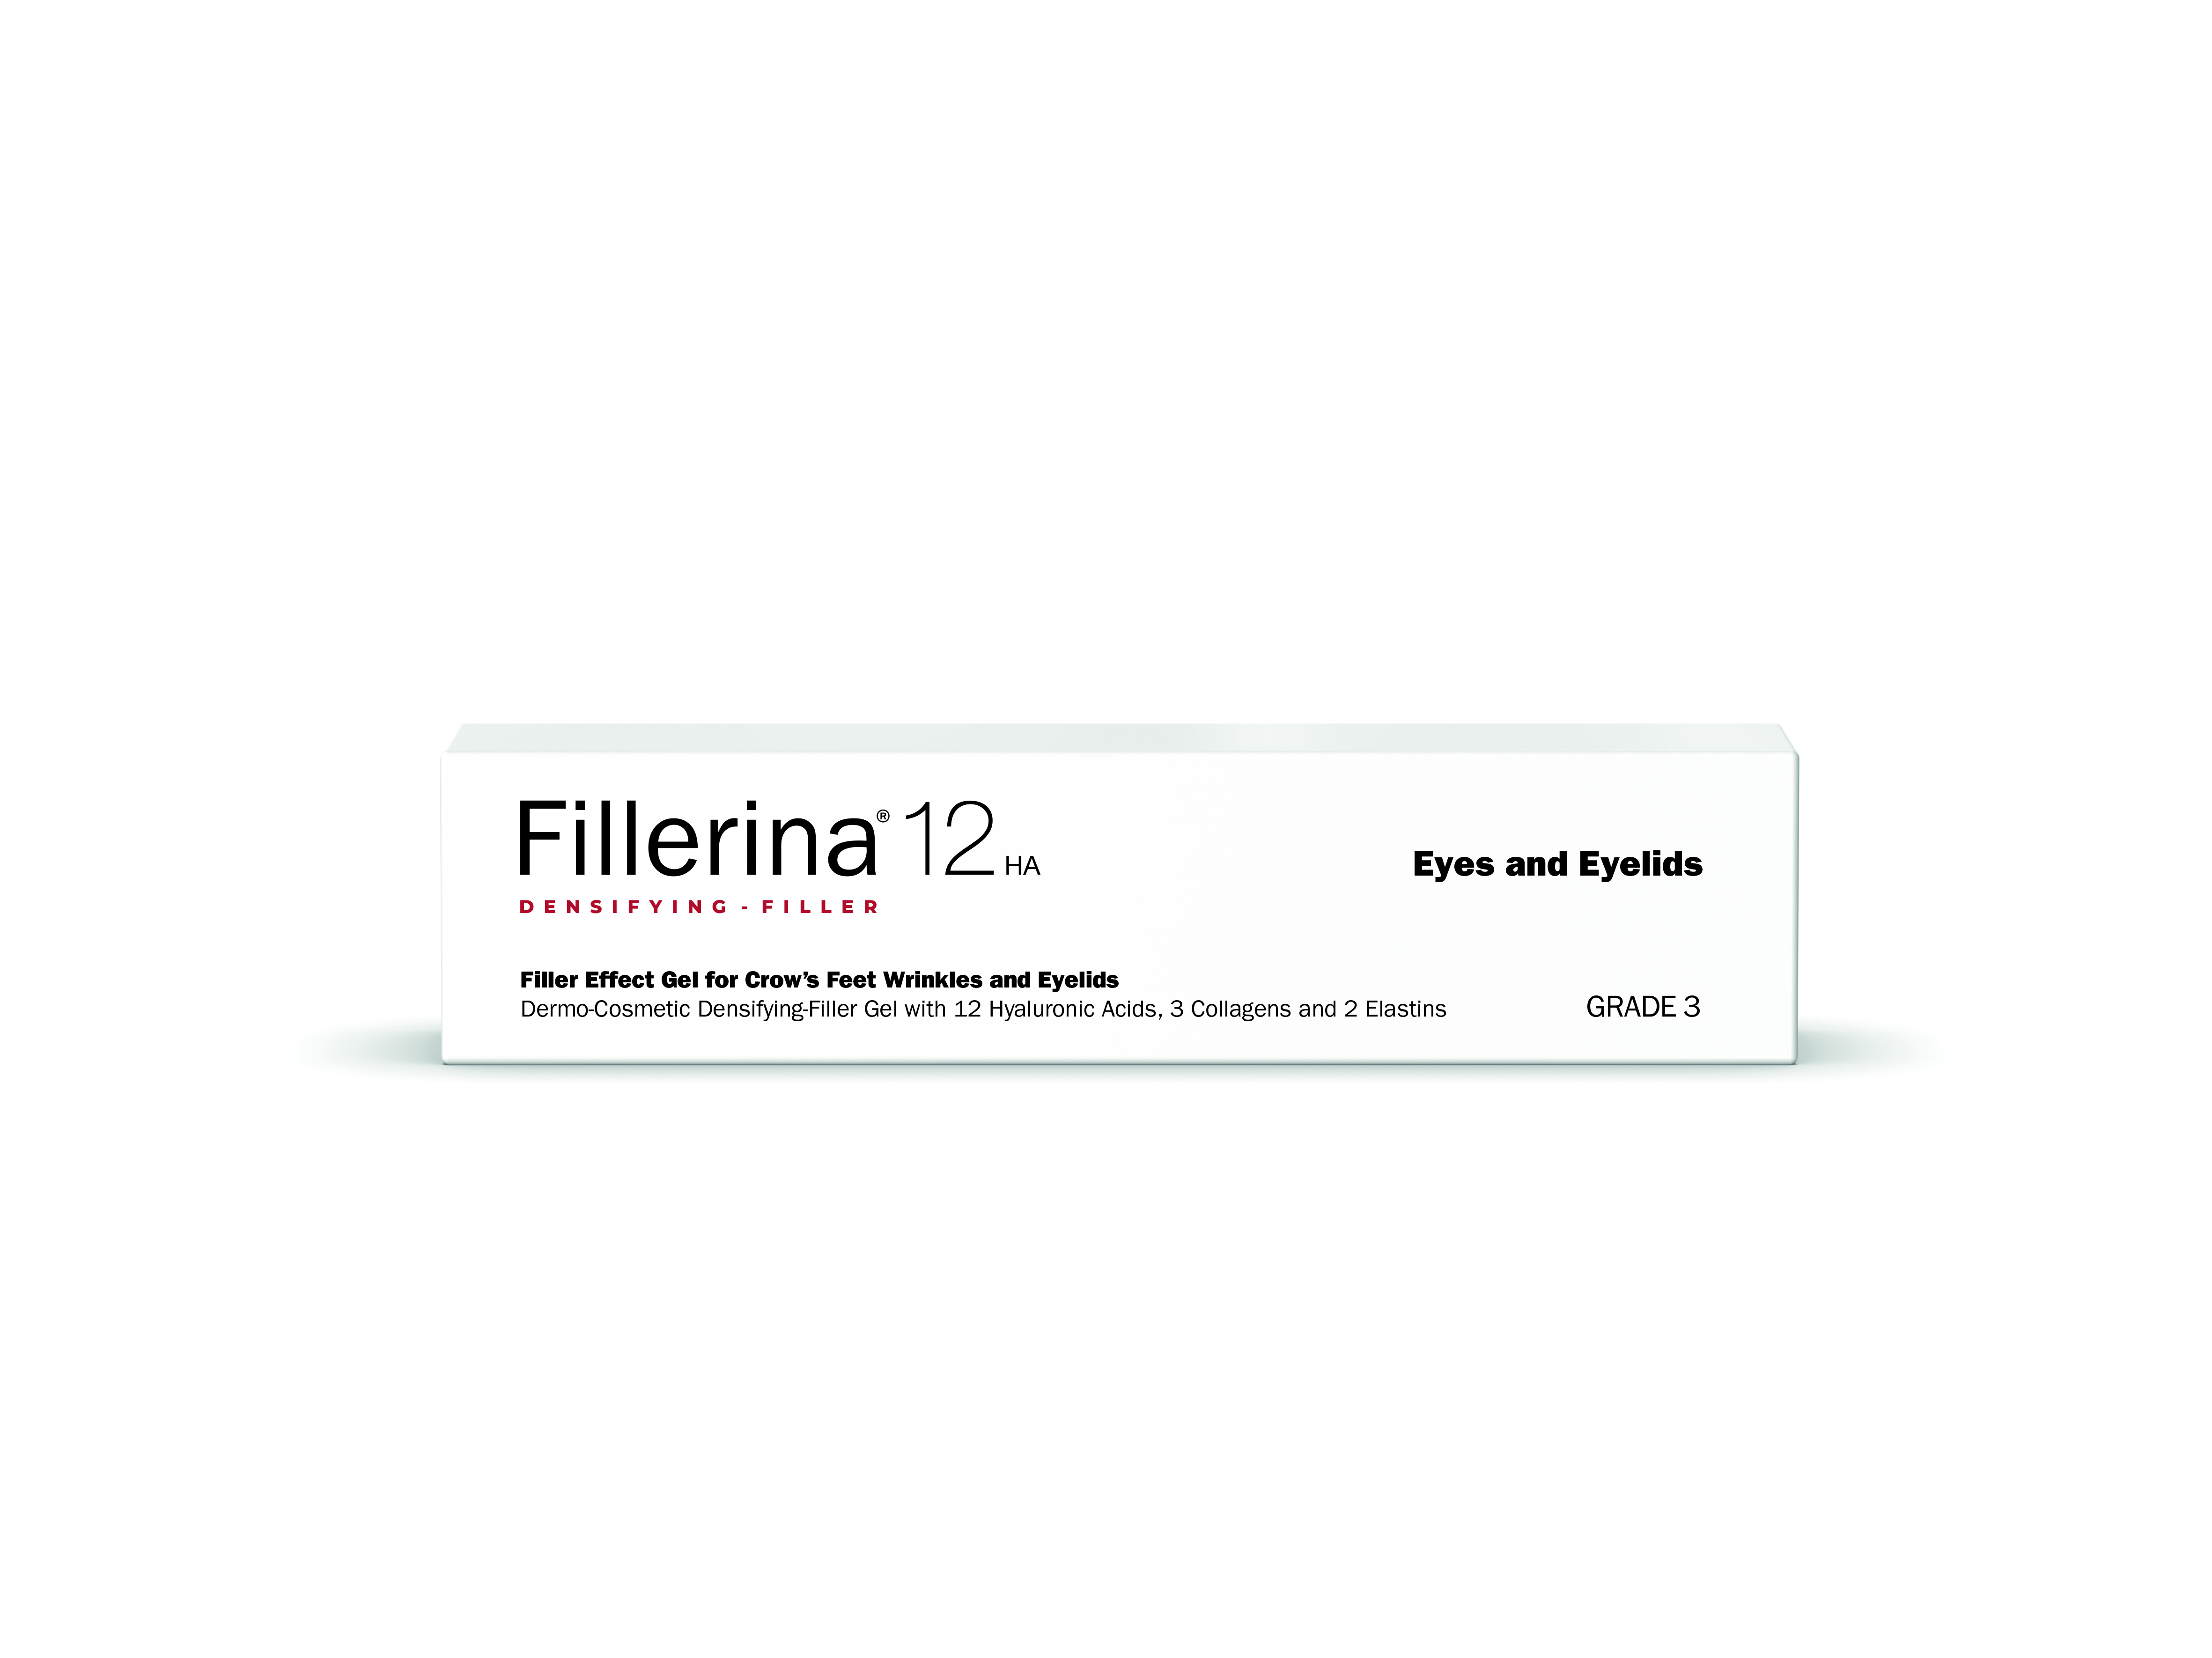 Fillerina 12HA Densifying- Filler Eyes and Eyelids